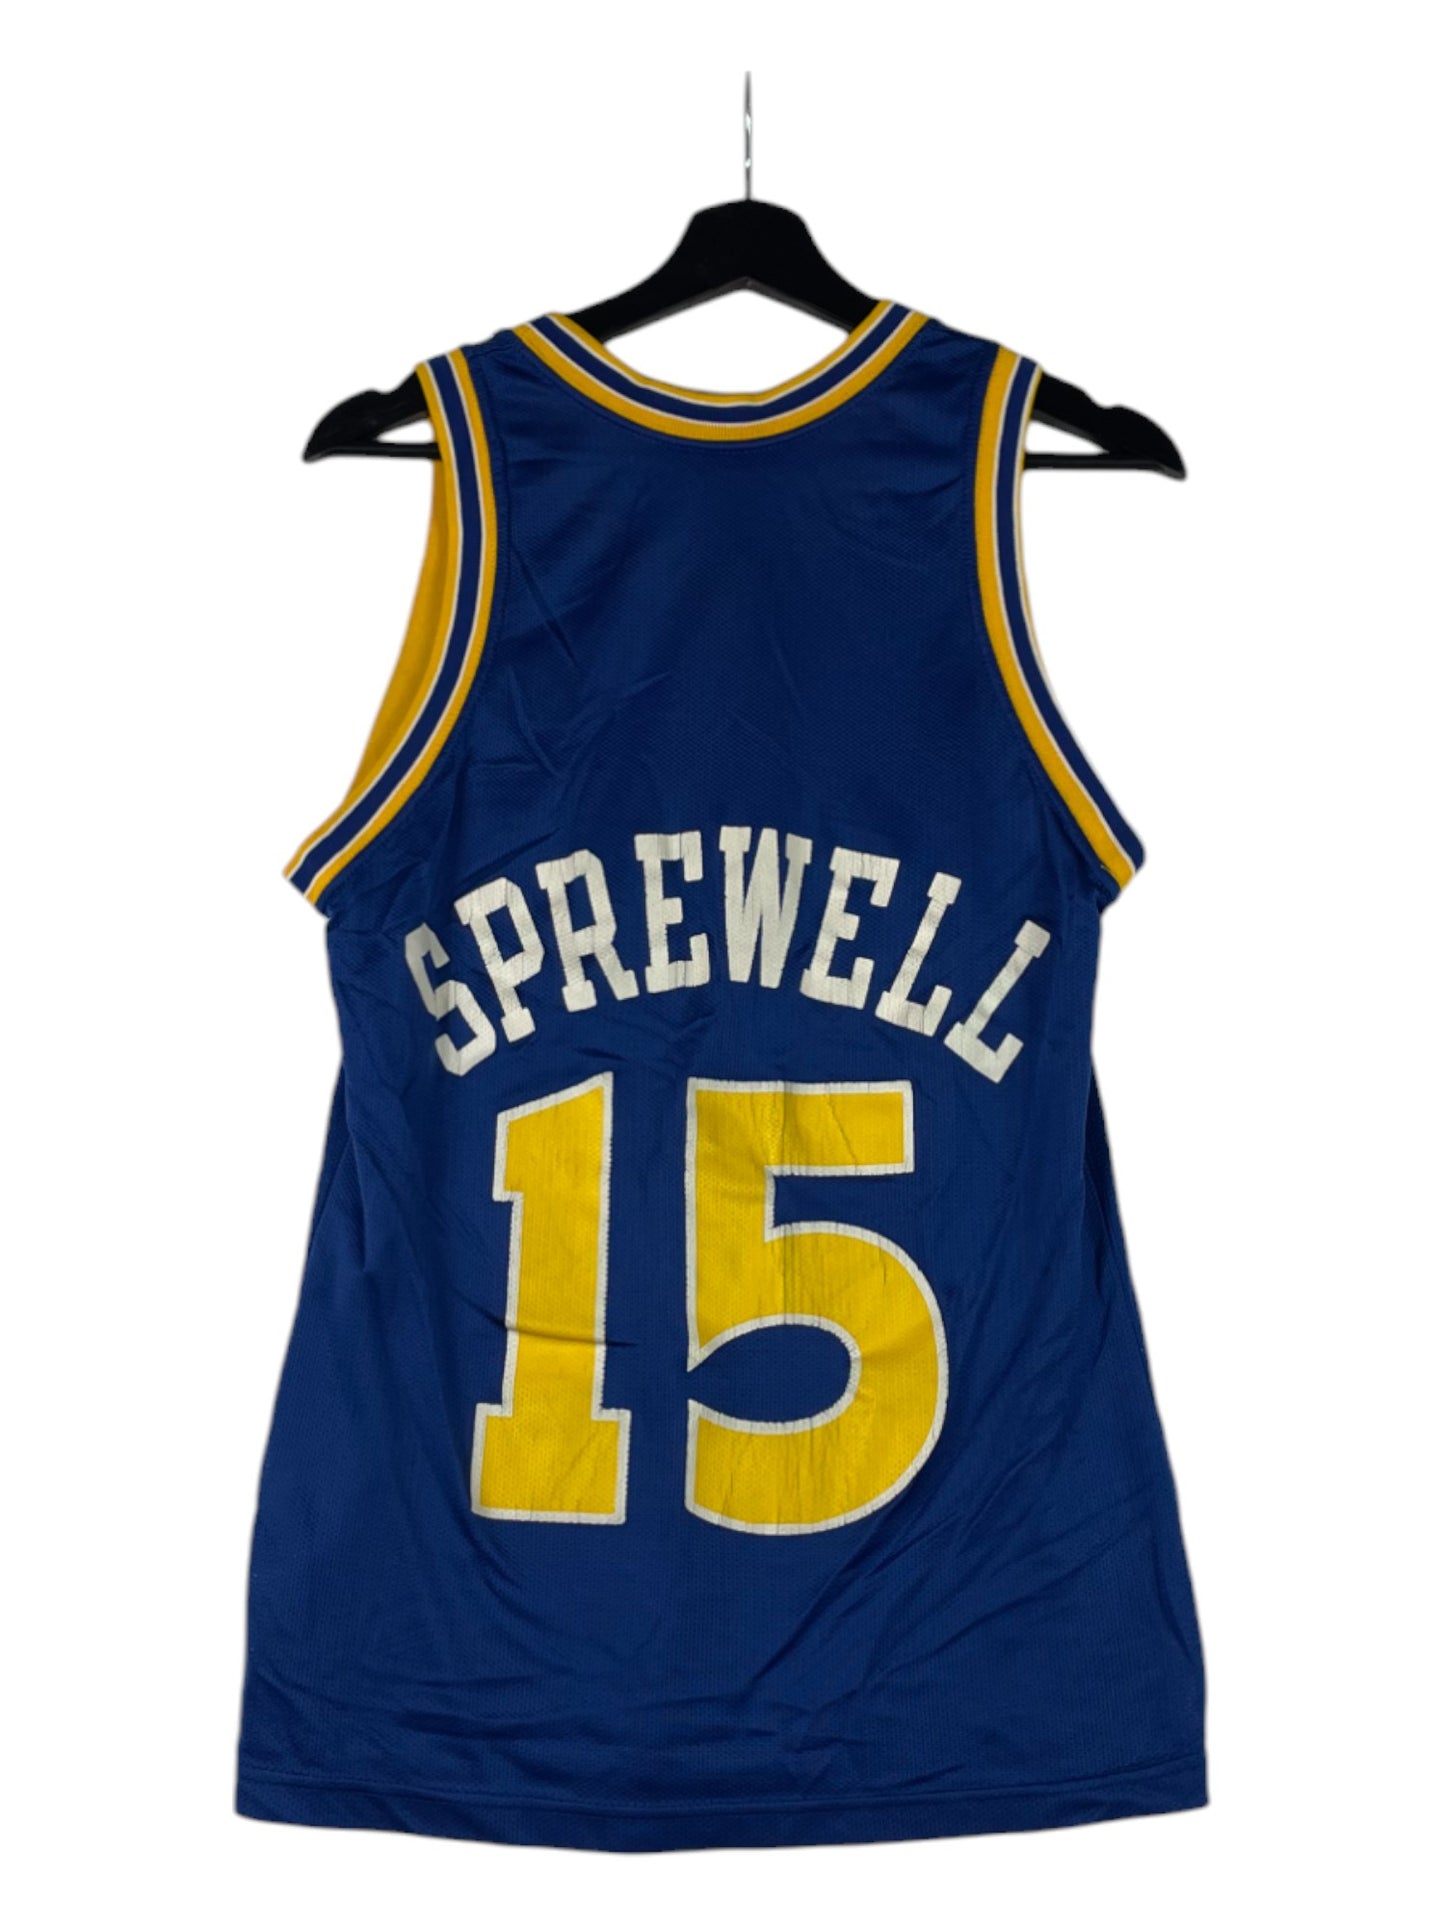 Warriors Sprewell Jersey